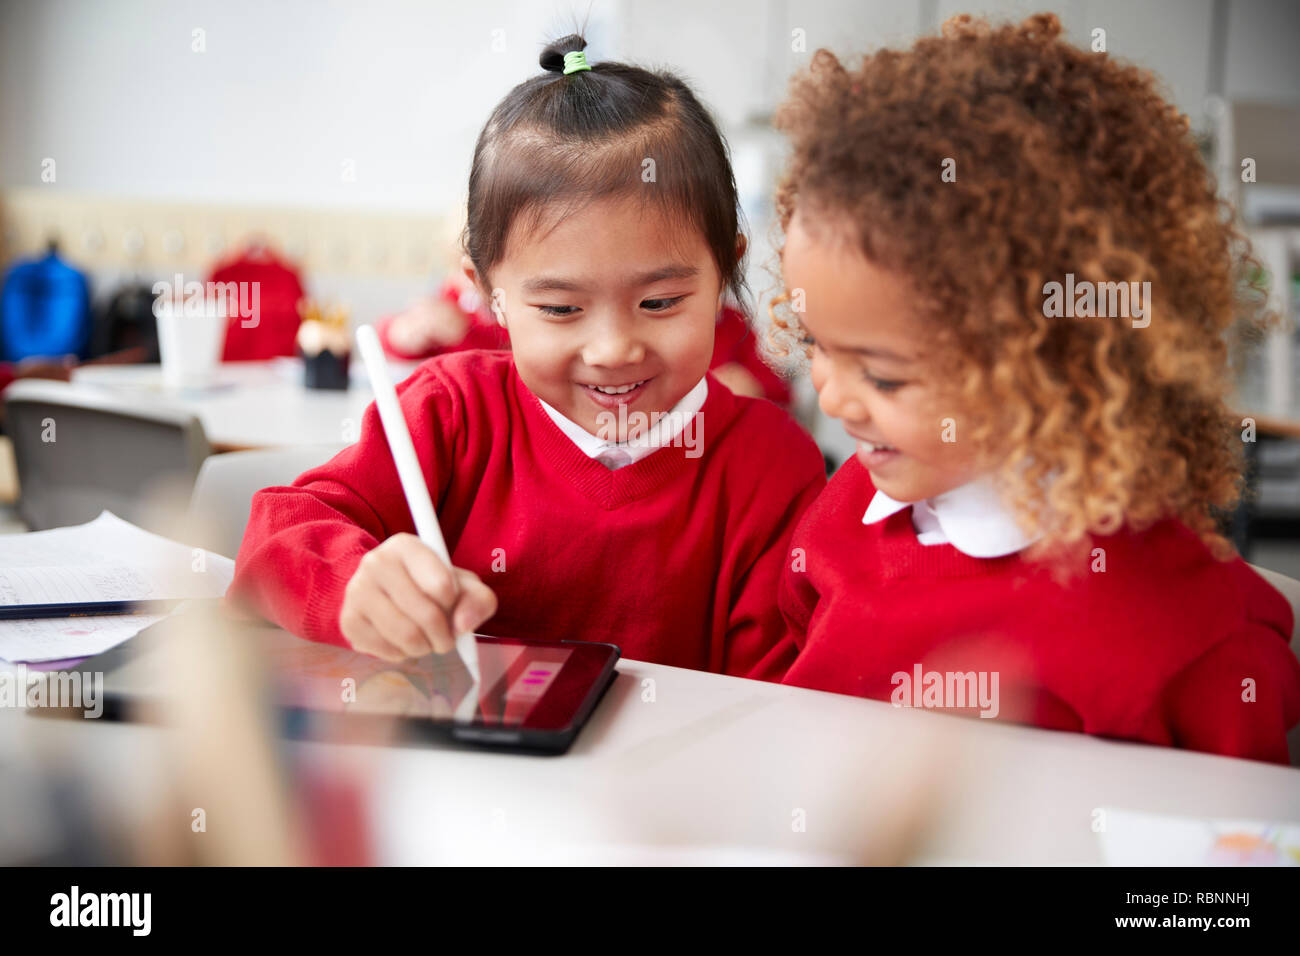 In der Nähe von zwei Kindergarten Schülerinnen das Tragen von Schuluniformen, sitzen an einem Schreibtisch in einem Klassenzimmer mit einem Tablet Computer und Stift, auf den Bildschirm zu schauen und lächeln Stockfoto